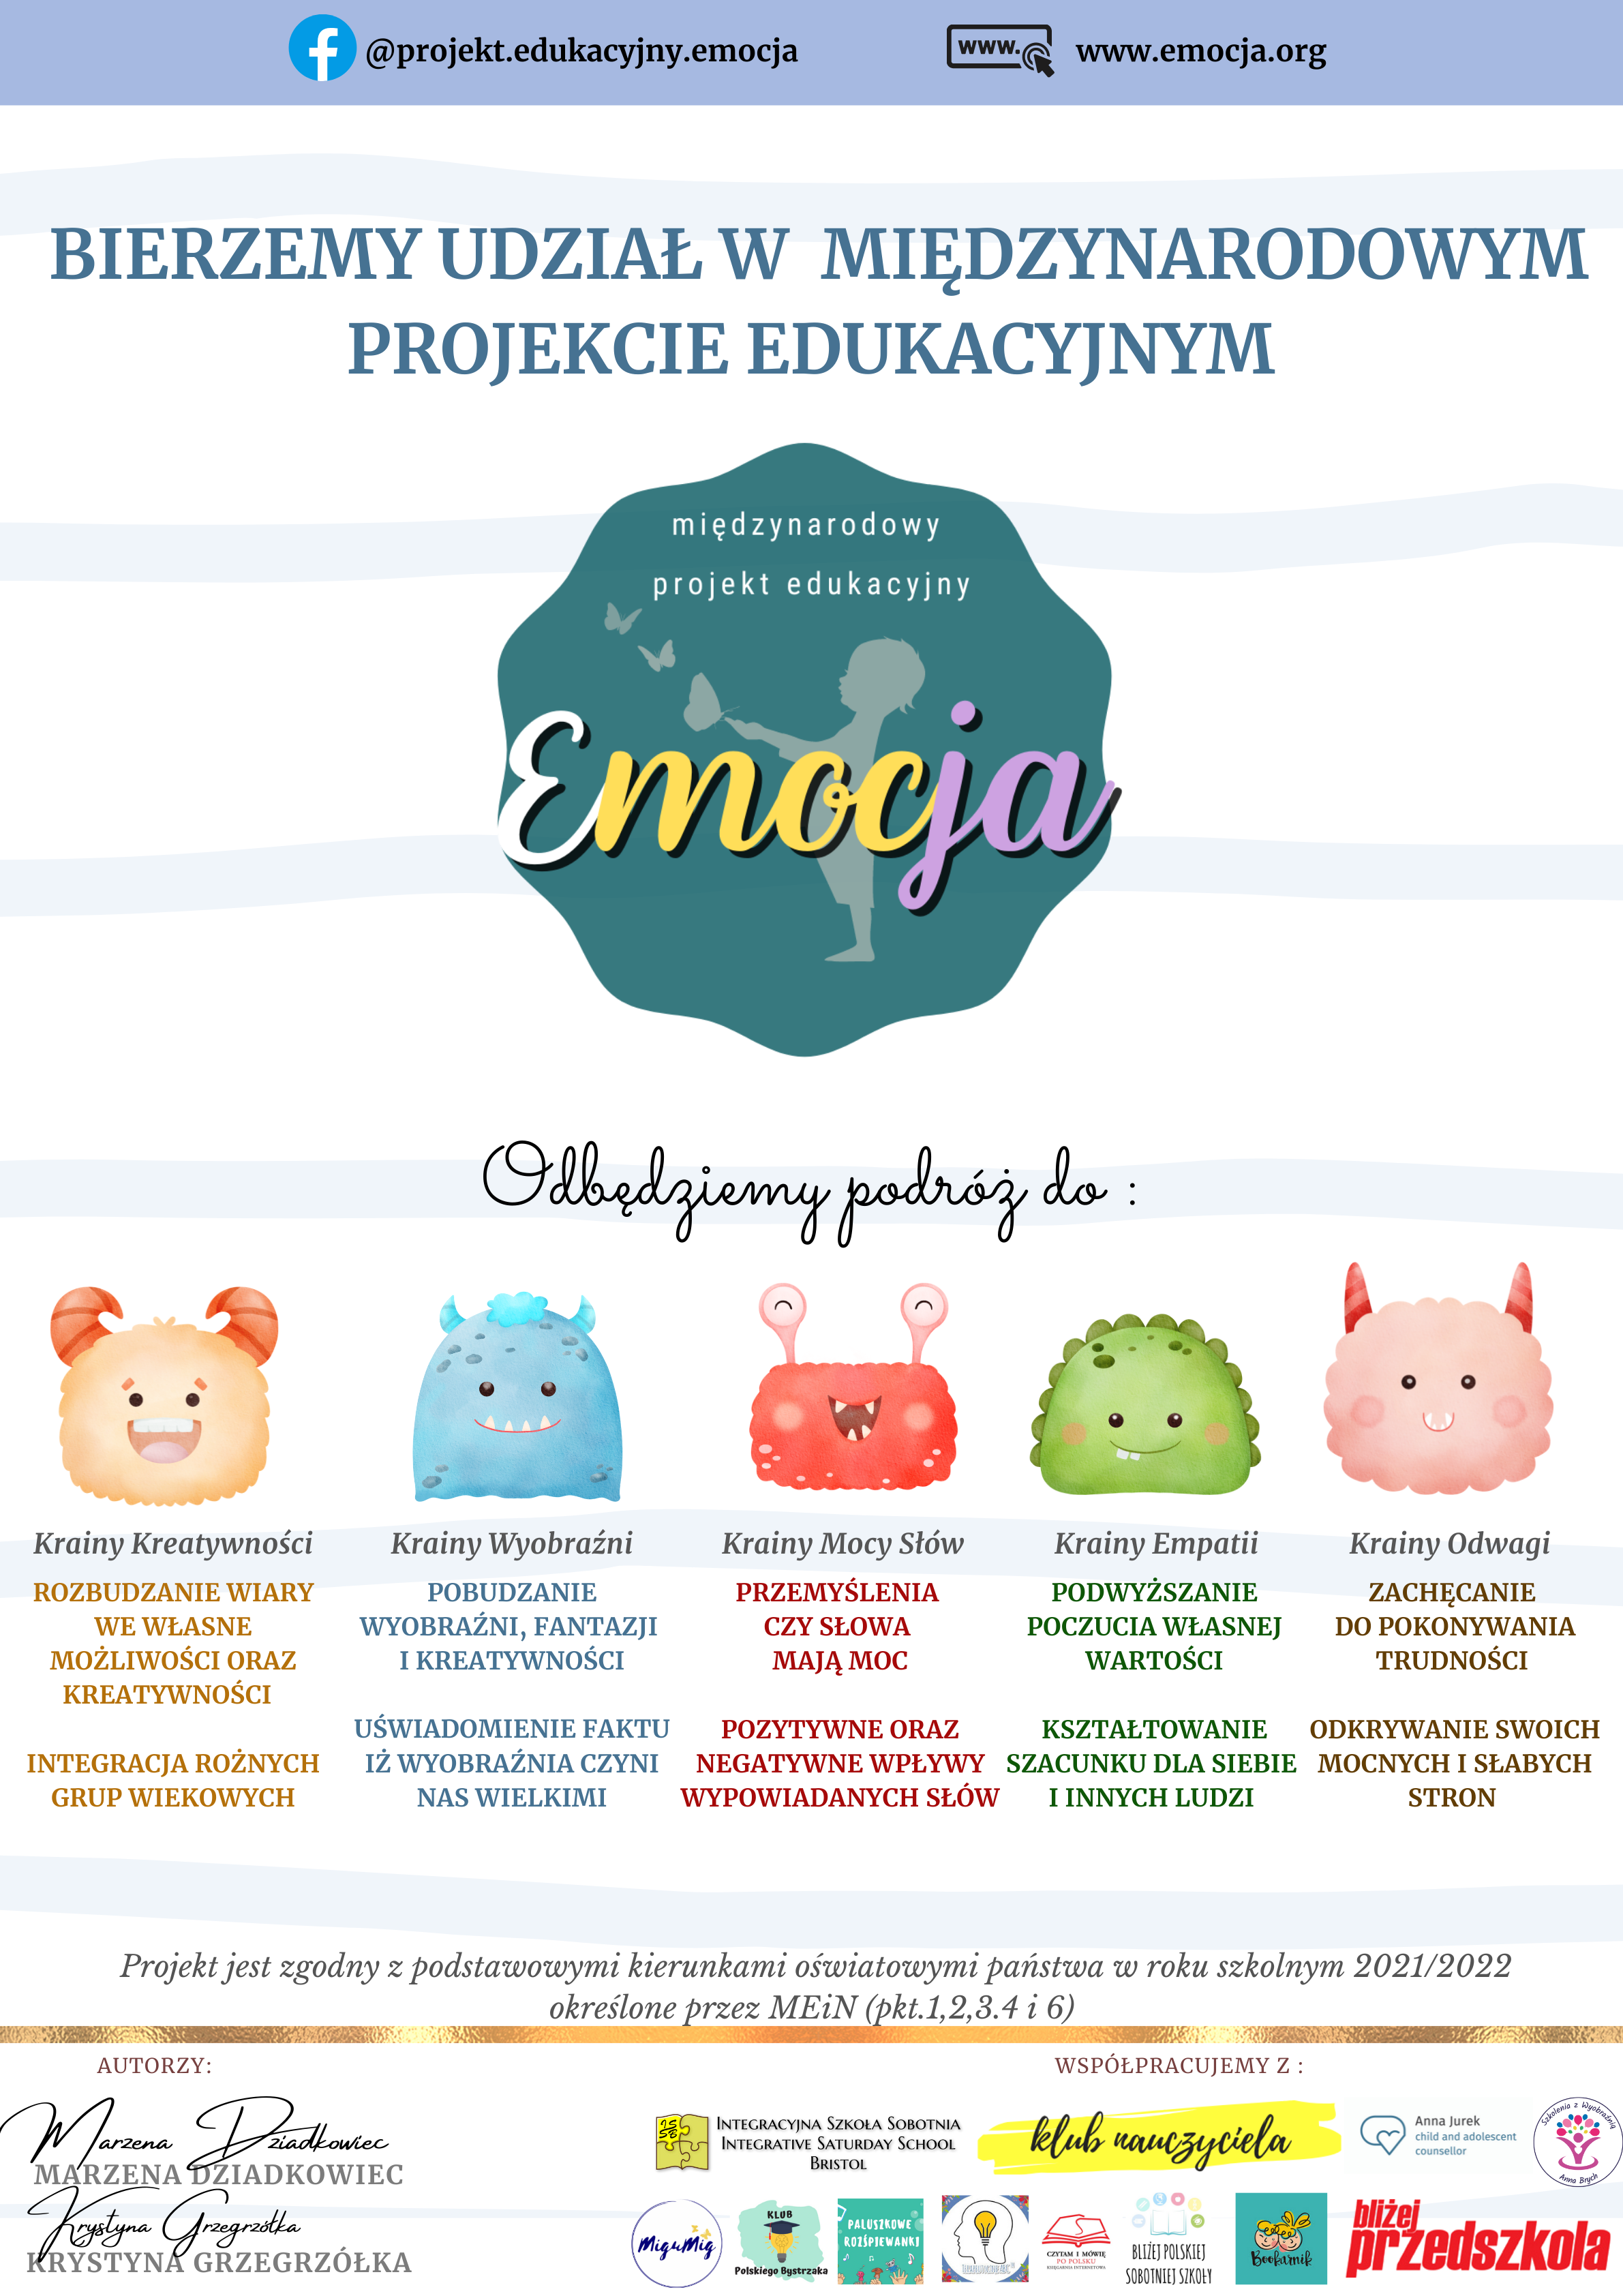 Plakat duży- Projekt edukacyjny Emocja (2).png (1.79 MB)